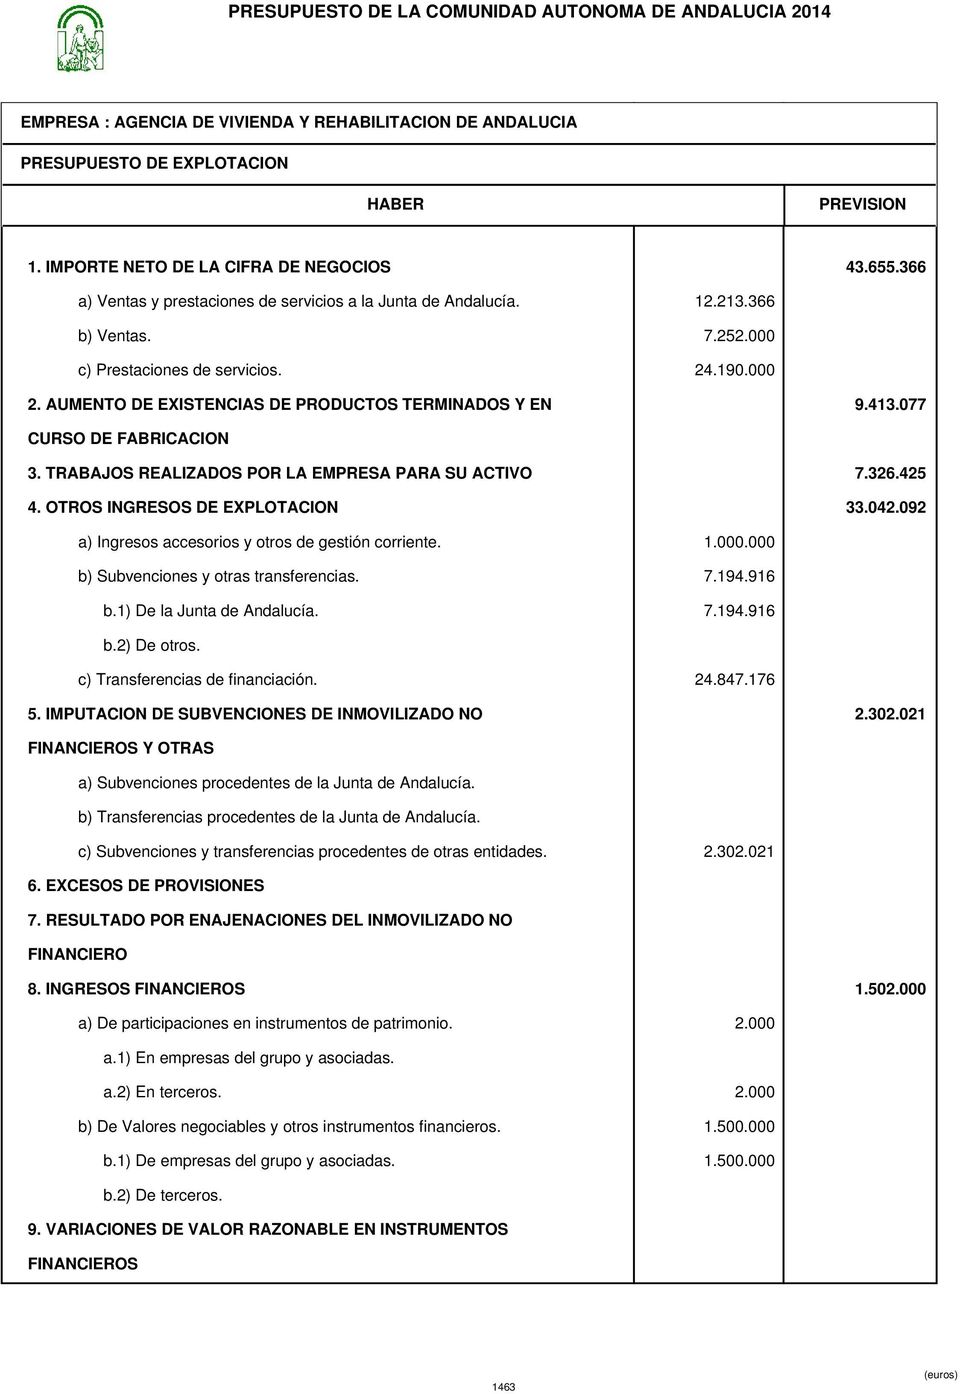 OTROS INGRESOS DE EXPLOTACION 33.042.092 a) Ingresos accesorios y otros de gestión corriente. 1.000.000 b) Subvenciones y otras transferencias. 7.194.916 b.1) De la Junta de Andalucía. 7.194.916 b.2) De otros.